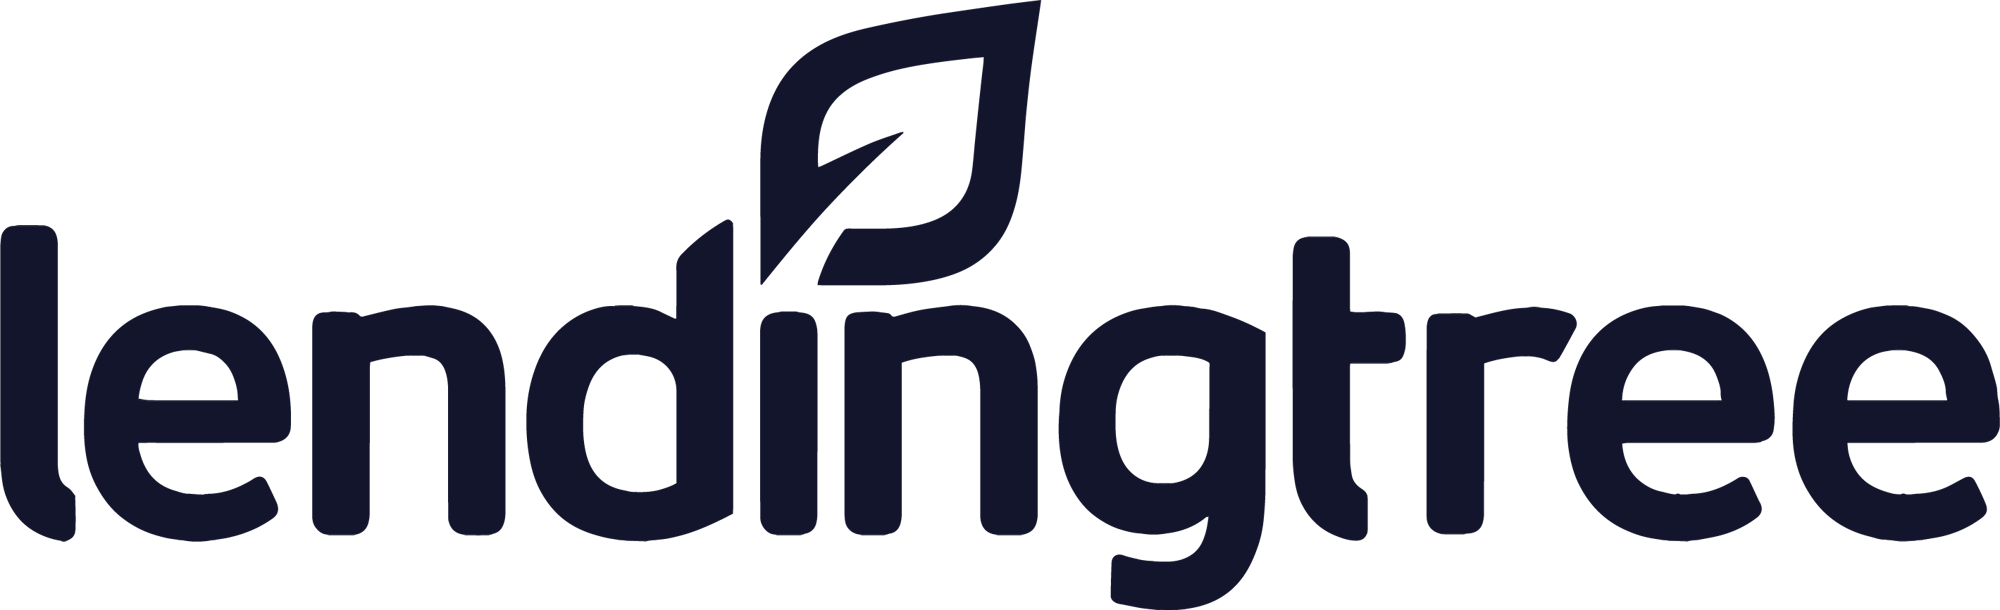 Lendingtree_Logo-2